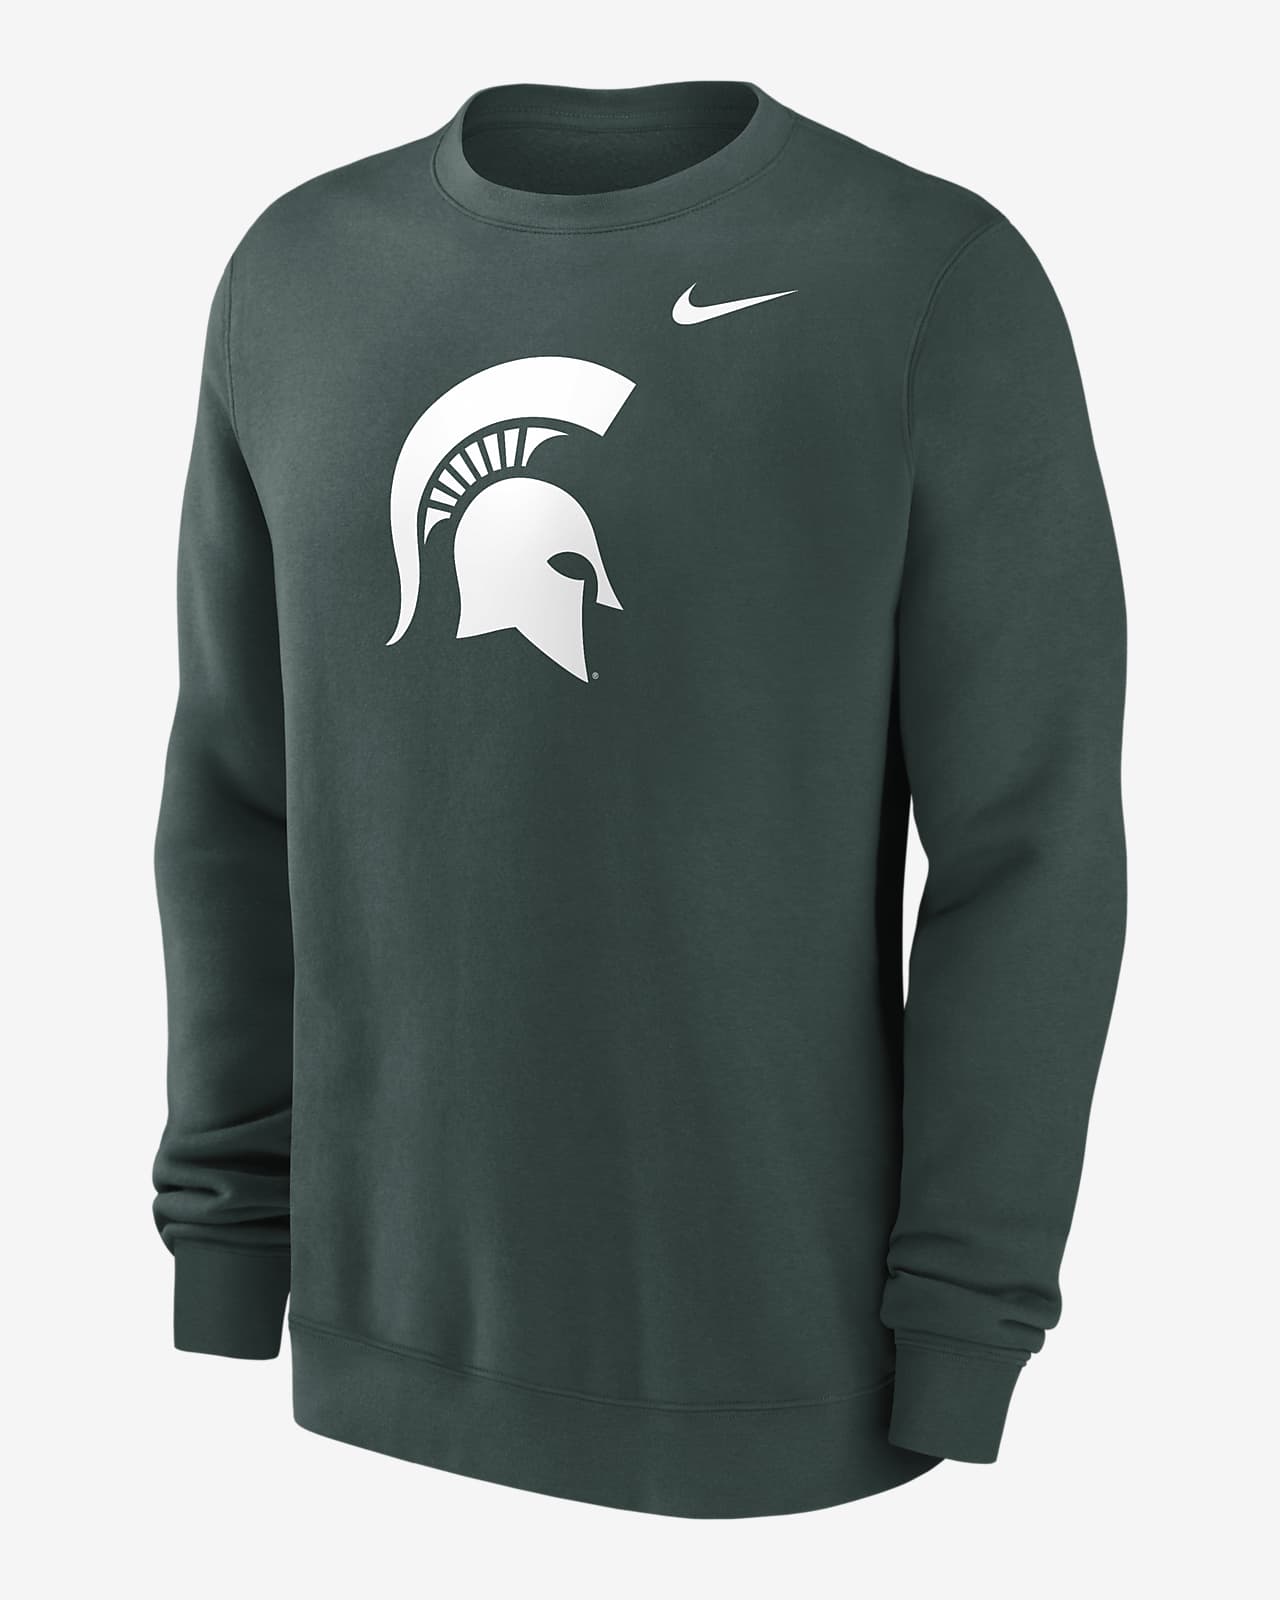 Michigan State Spartans Primetime Evergreen Logo Men's Nike College Pullover Crew